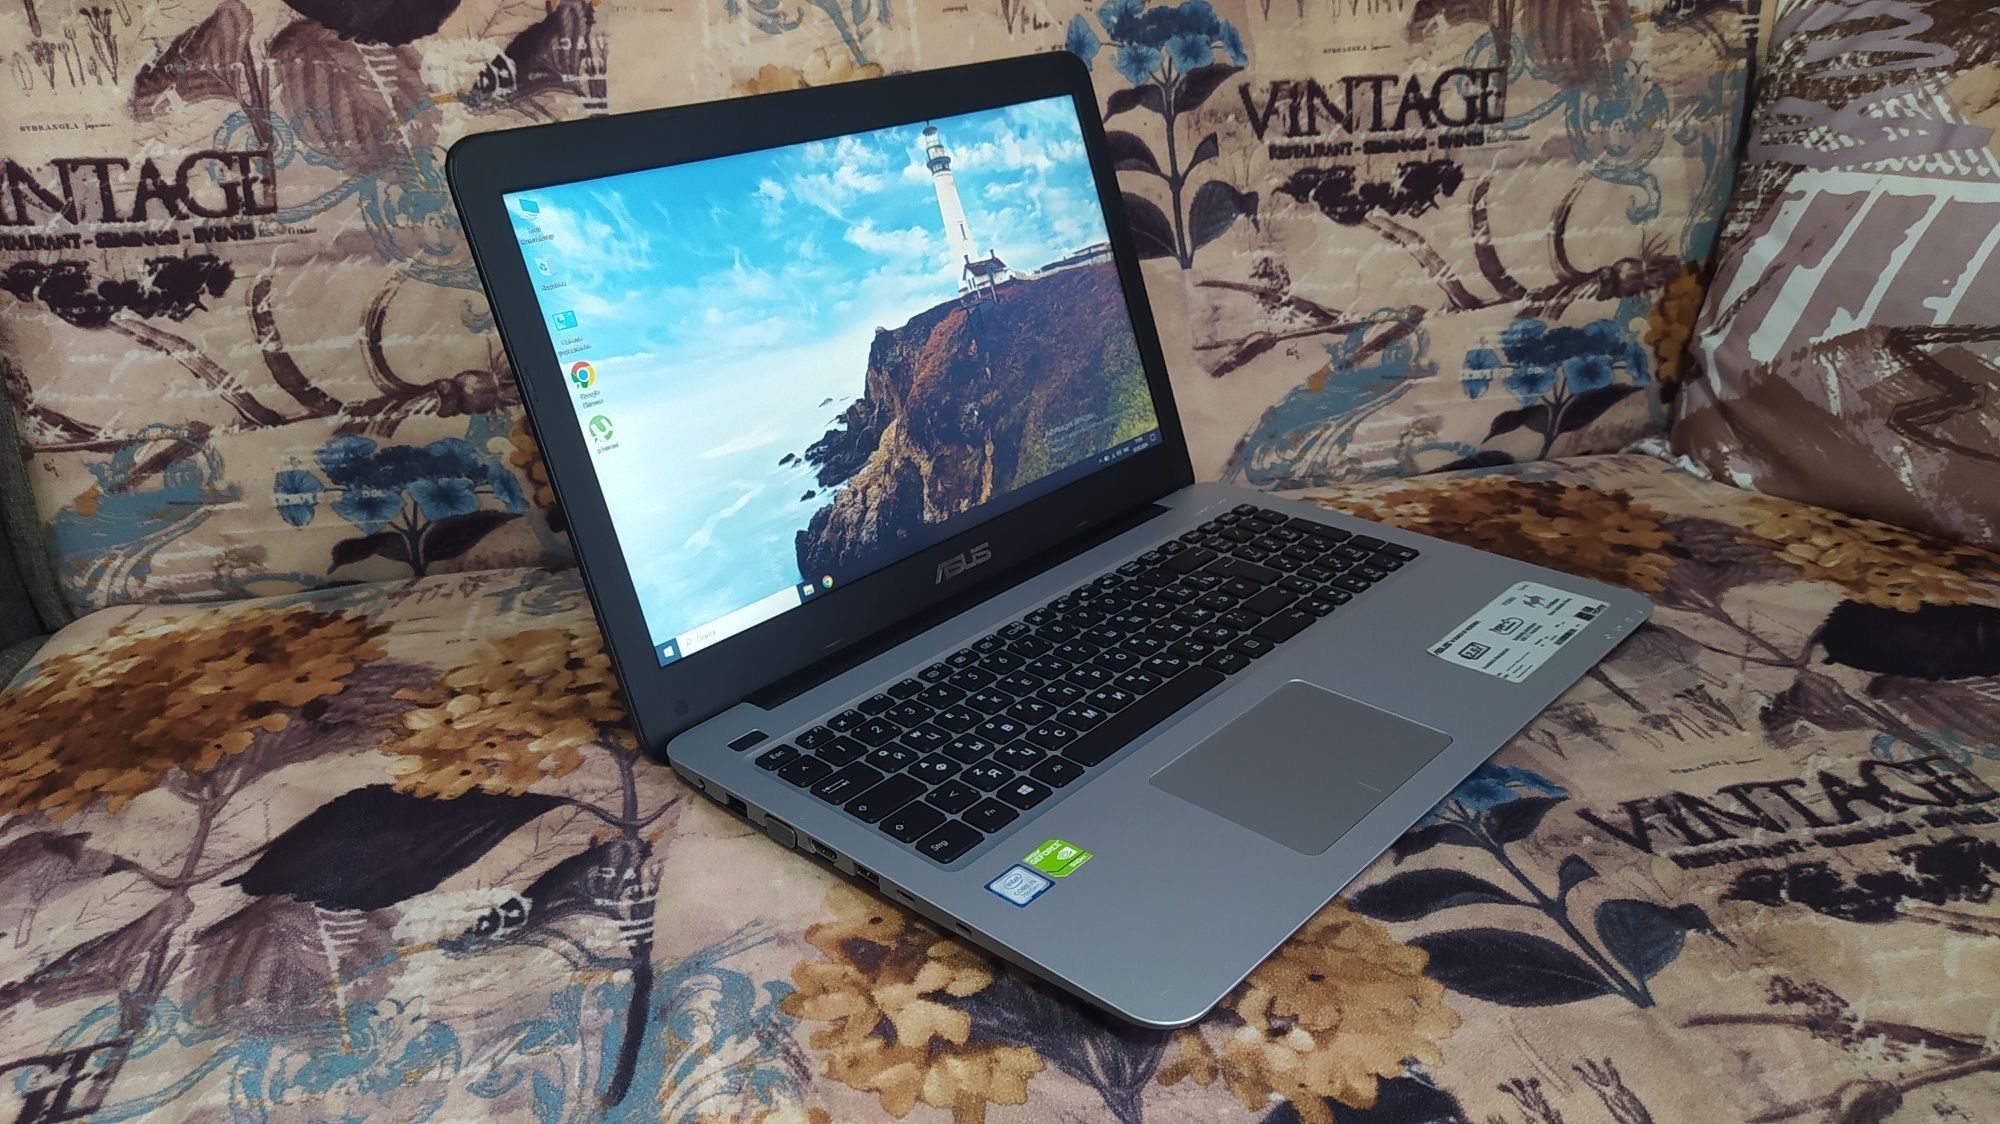 Laptop Gaming Asus X556 i7-7500U 8GB DDR4 Nvidia 940MX 2GB Windows 10